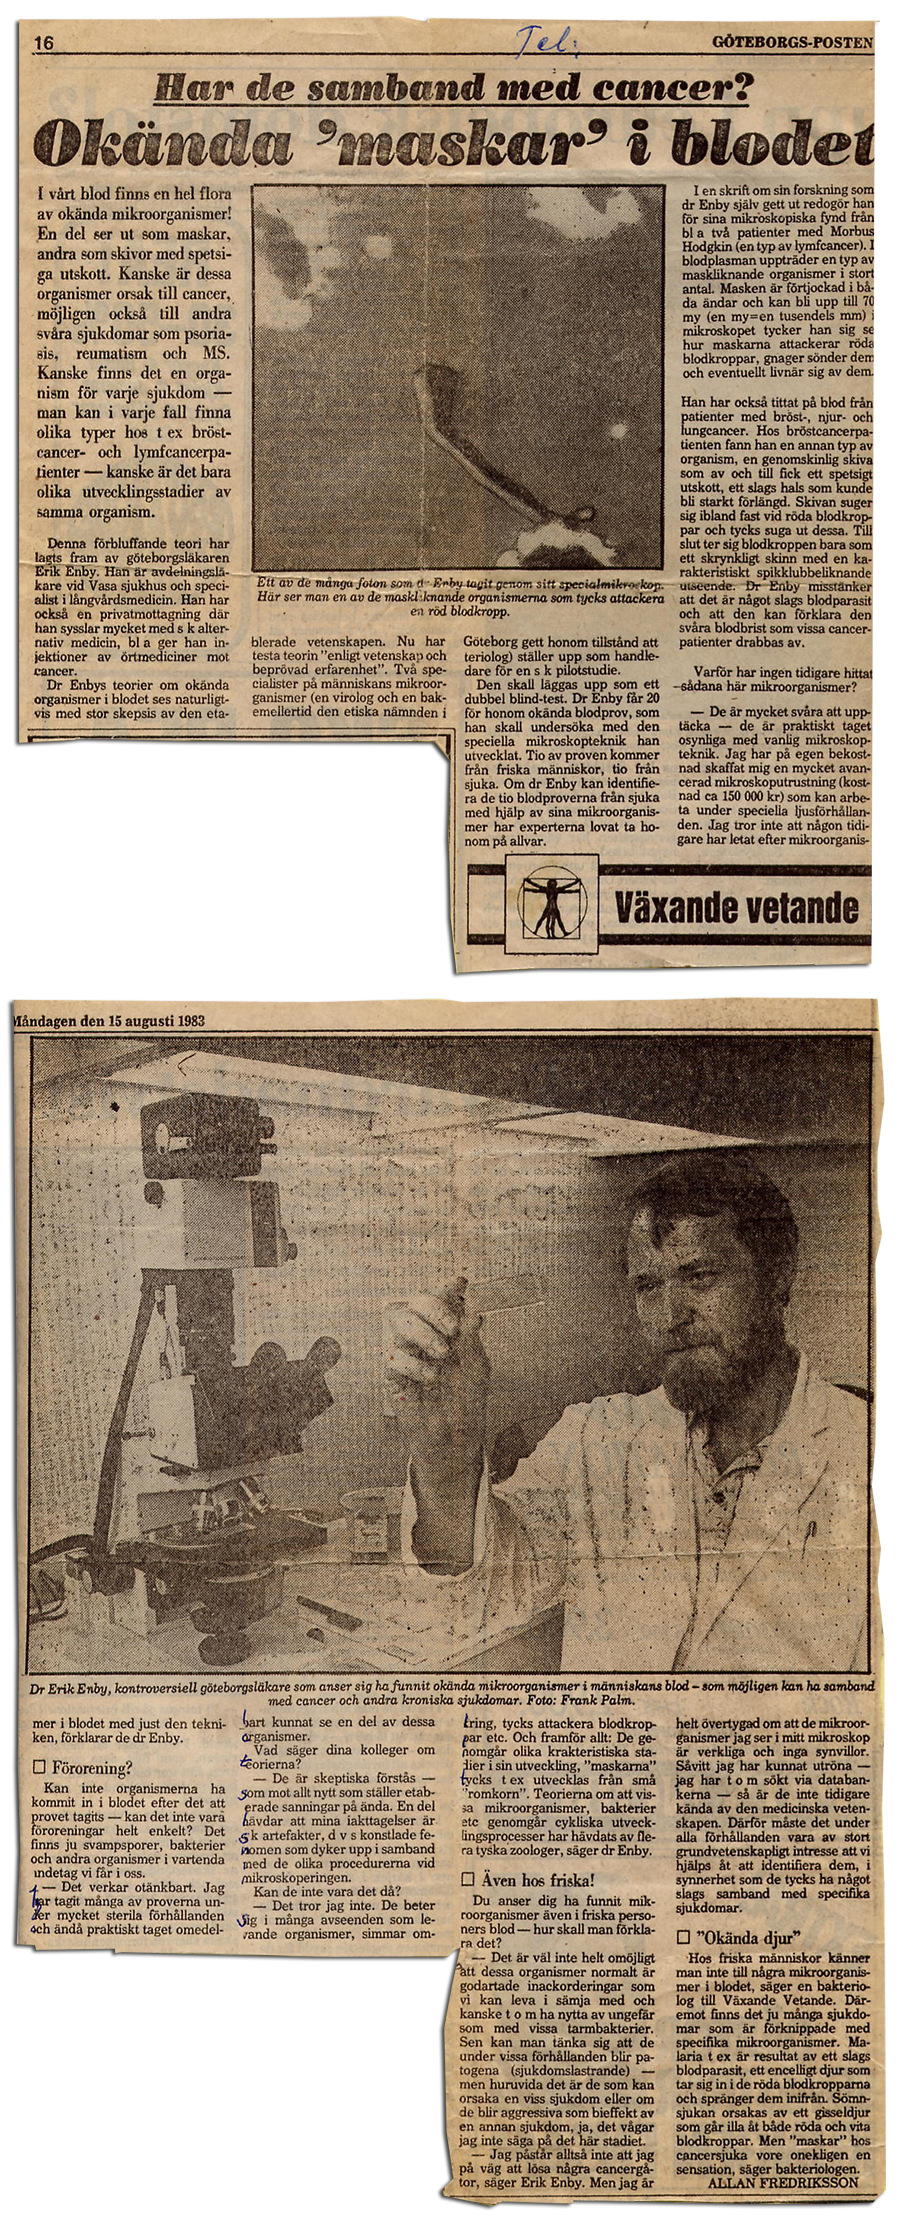 Erik Enby intervjuas om okända maskar/organismer i blodet - Göteborgsposten 15 aug 1983